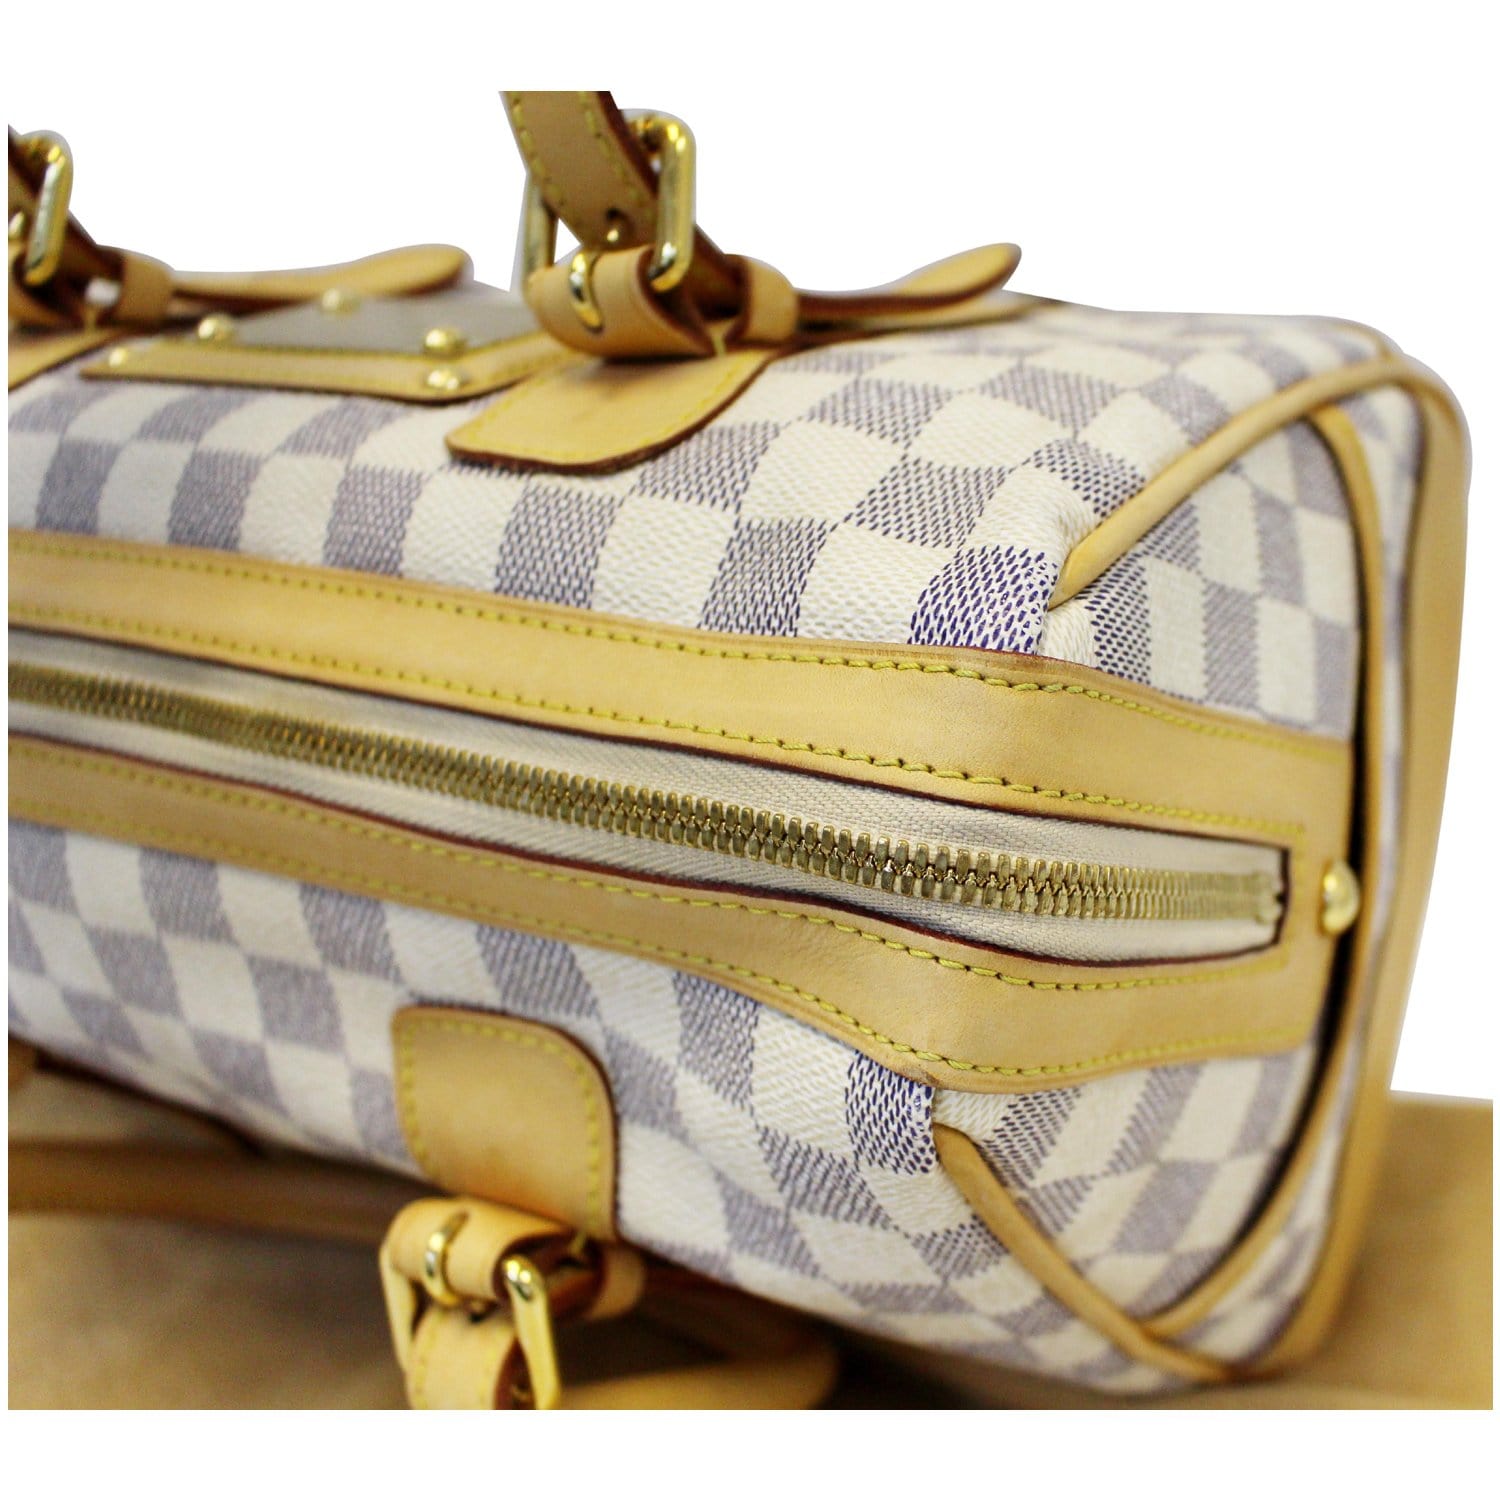 Brand New Louis Vuitton Damier Azur Berkeley Women's Bag